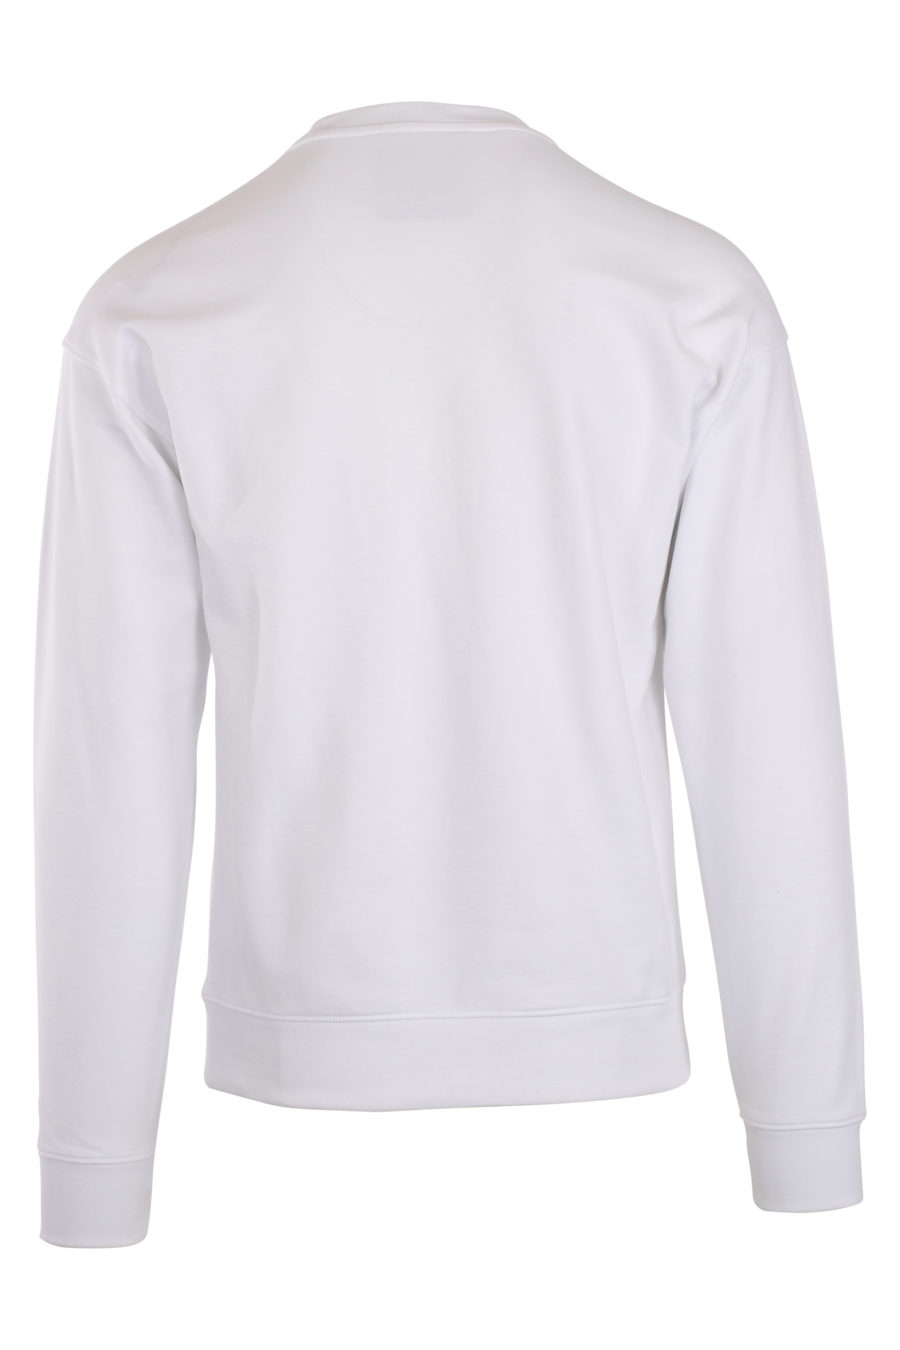 Camisola branca com o logótipo "fantasy" da Milano - IMG 0041